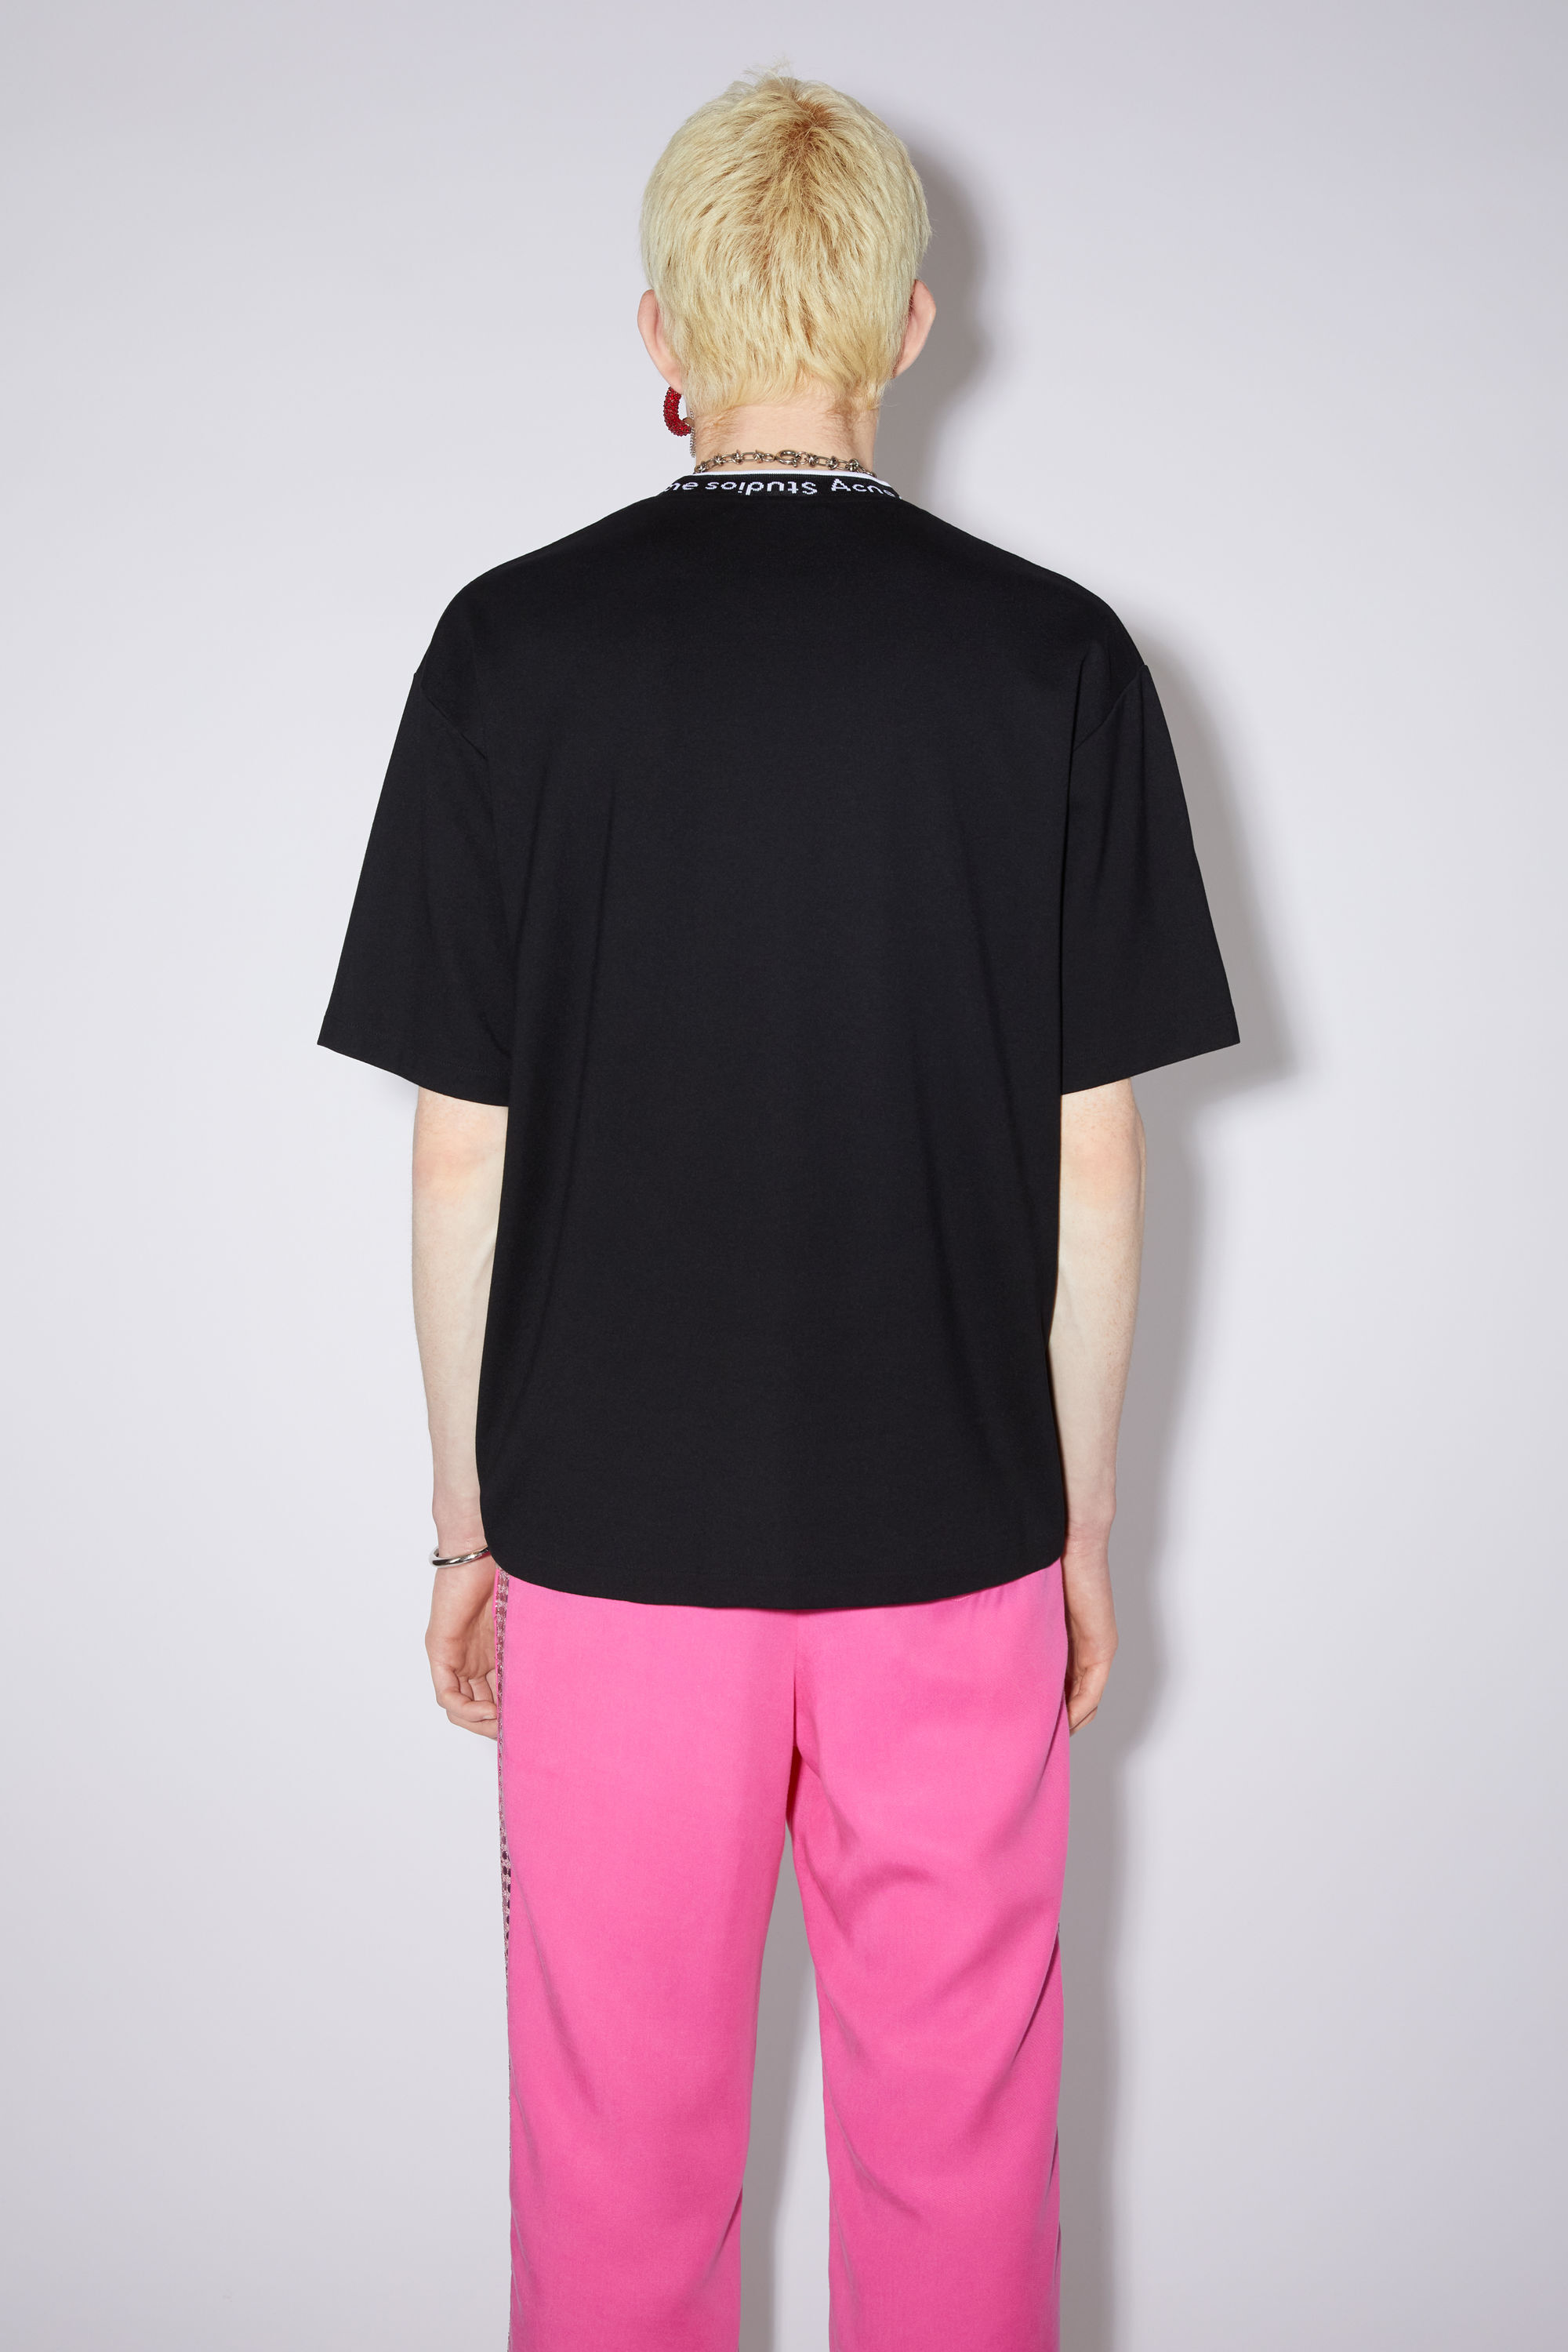 アクネ ストゥディオズ BL0221 PINK Tシャツ ピンク Mサイズ